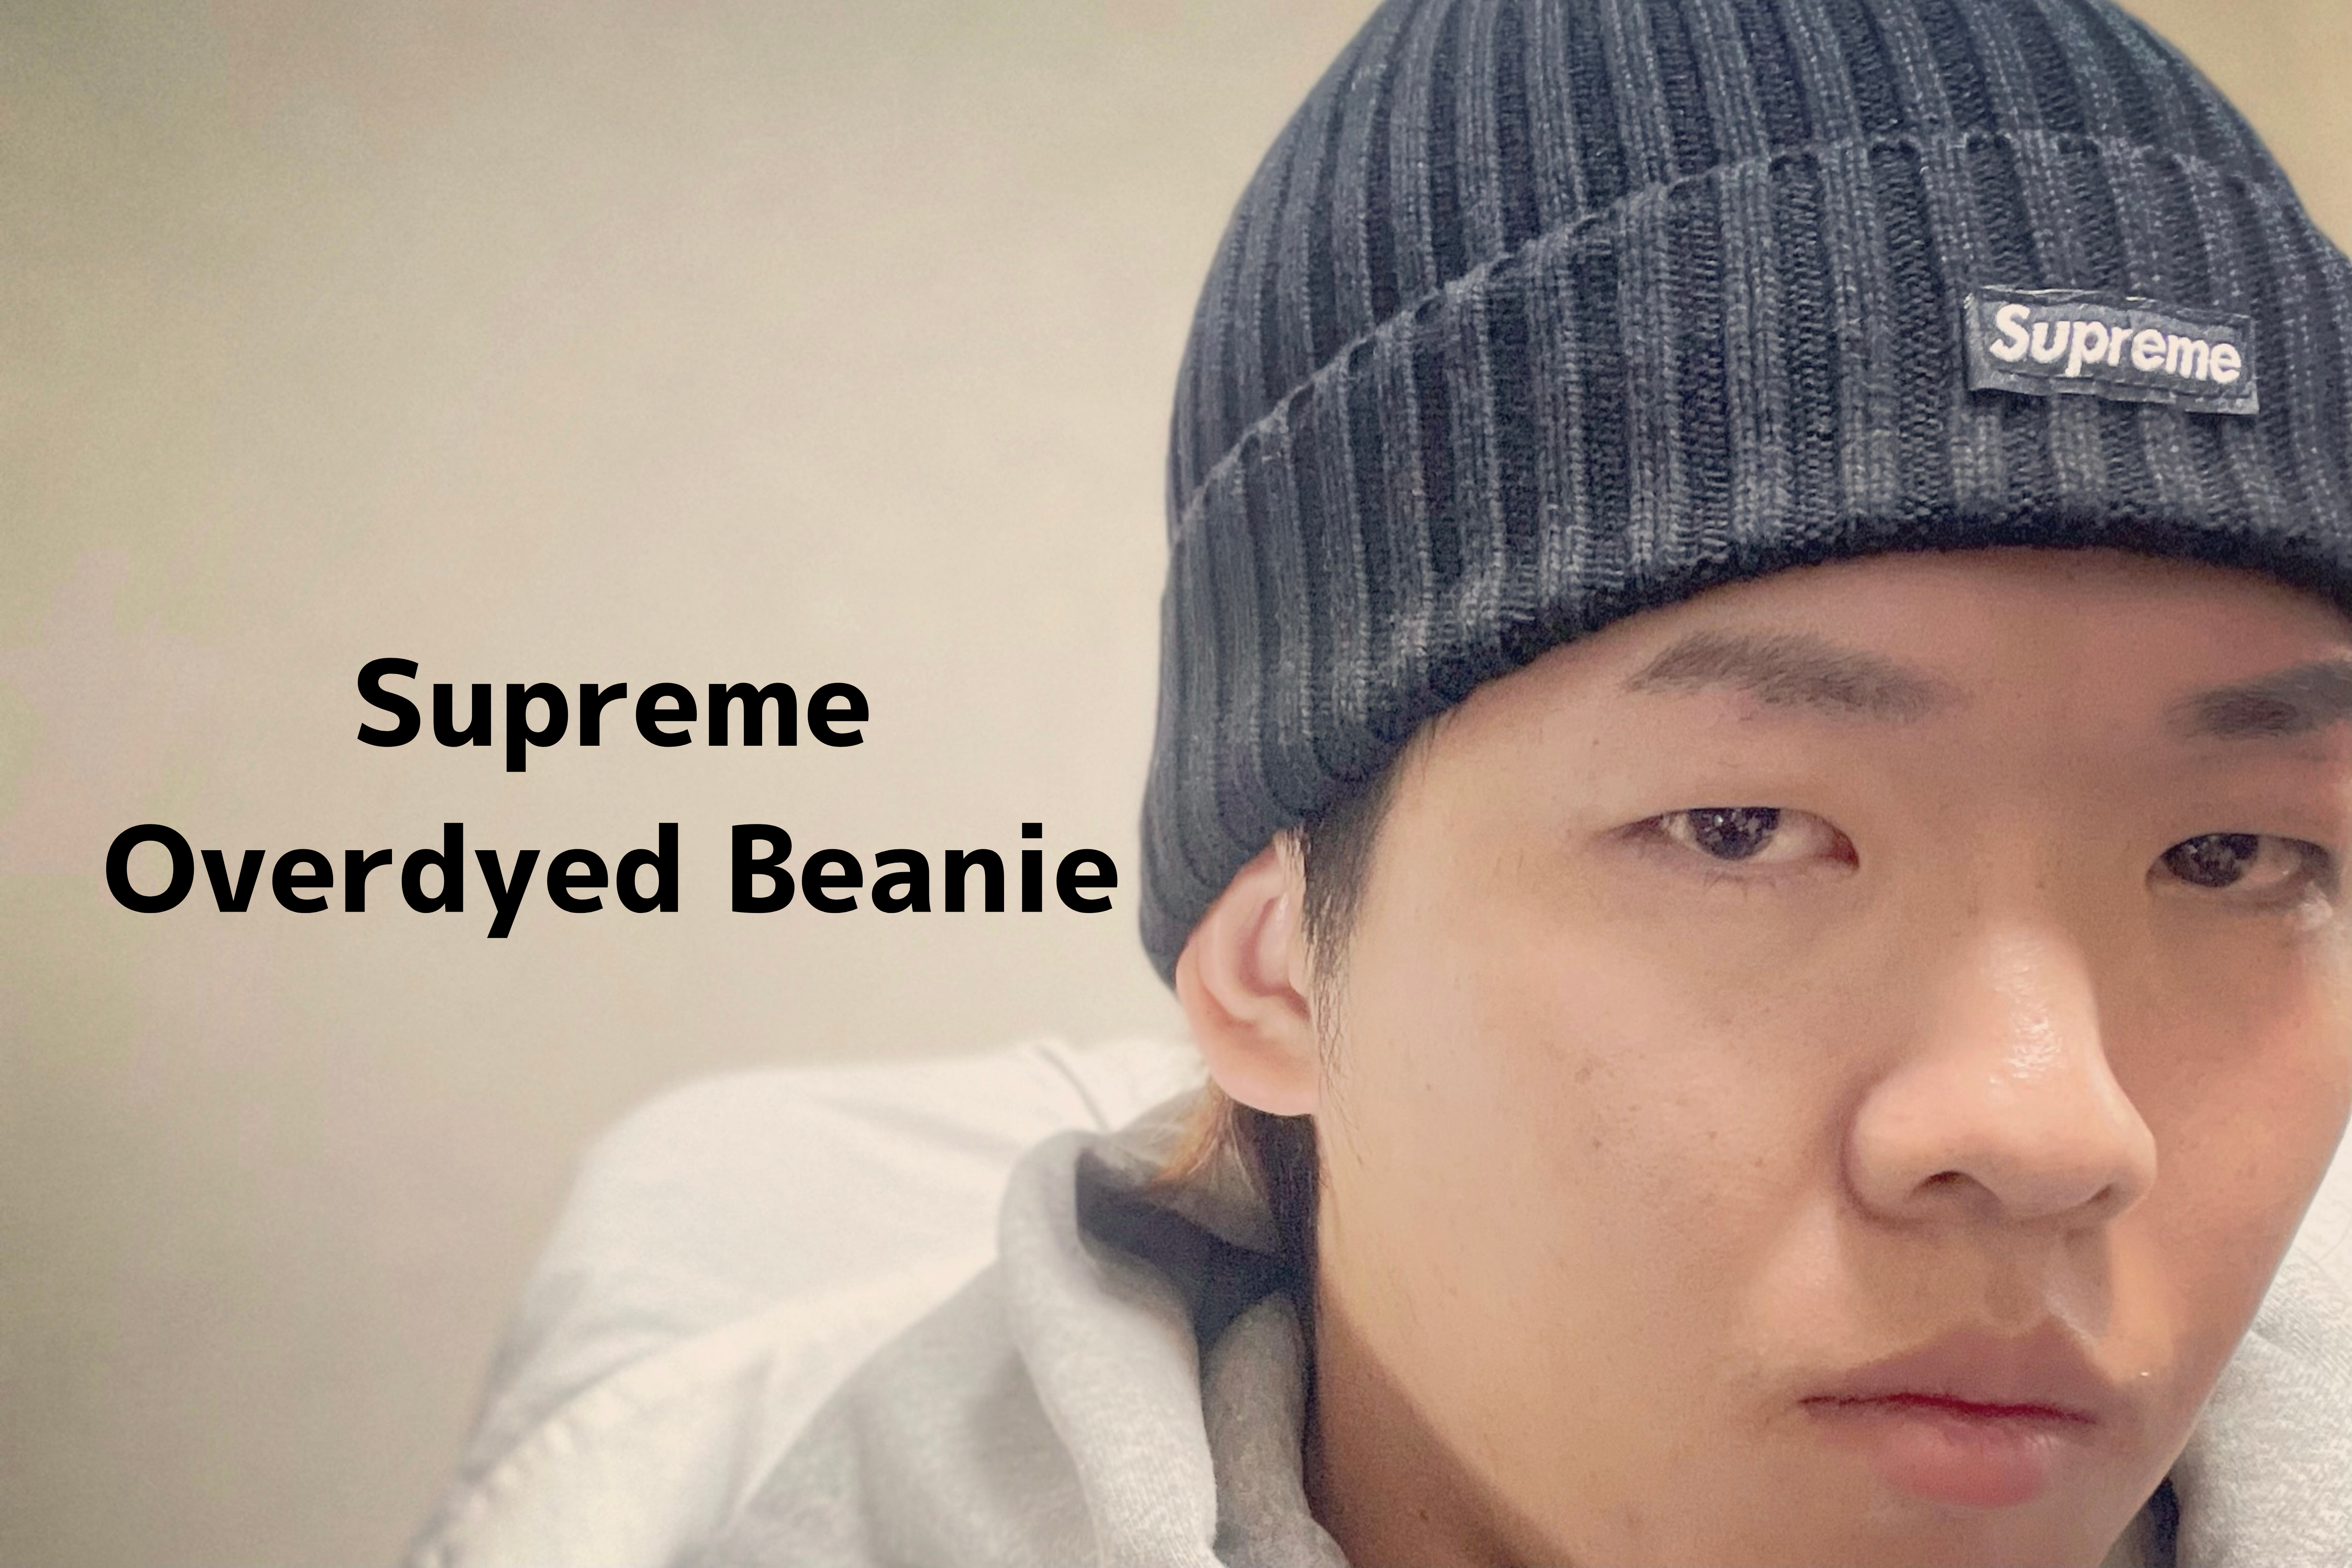 Supreme：Overdyed Beanie】シュプリームのブランド特徴とオーバーダイビーニーの紹介レビュー | SHULOG